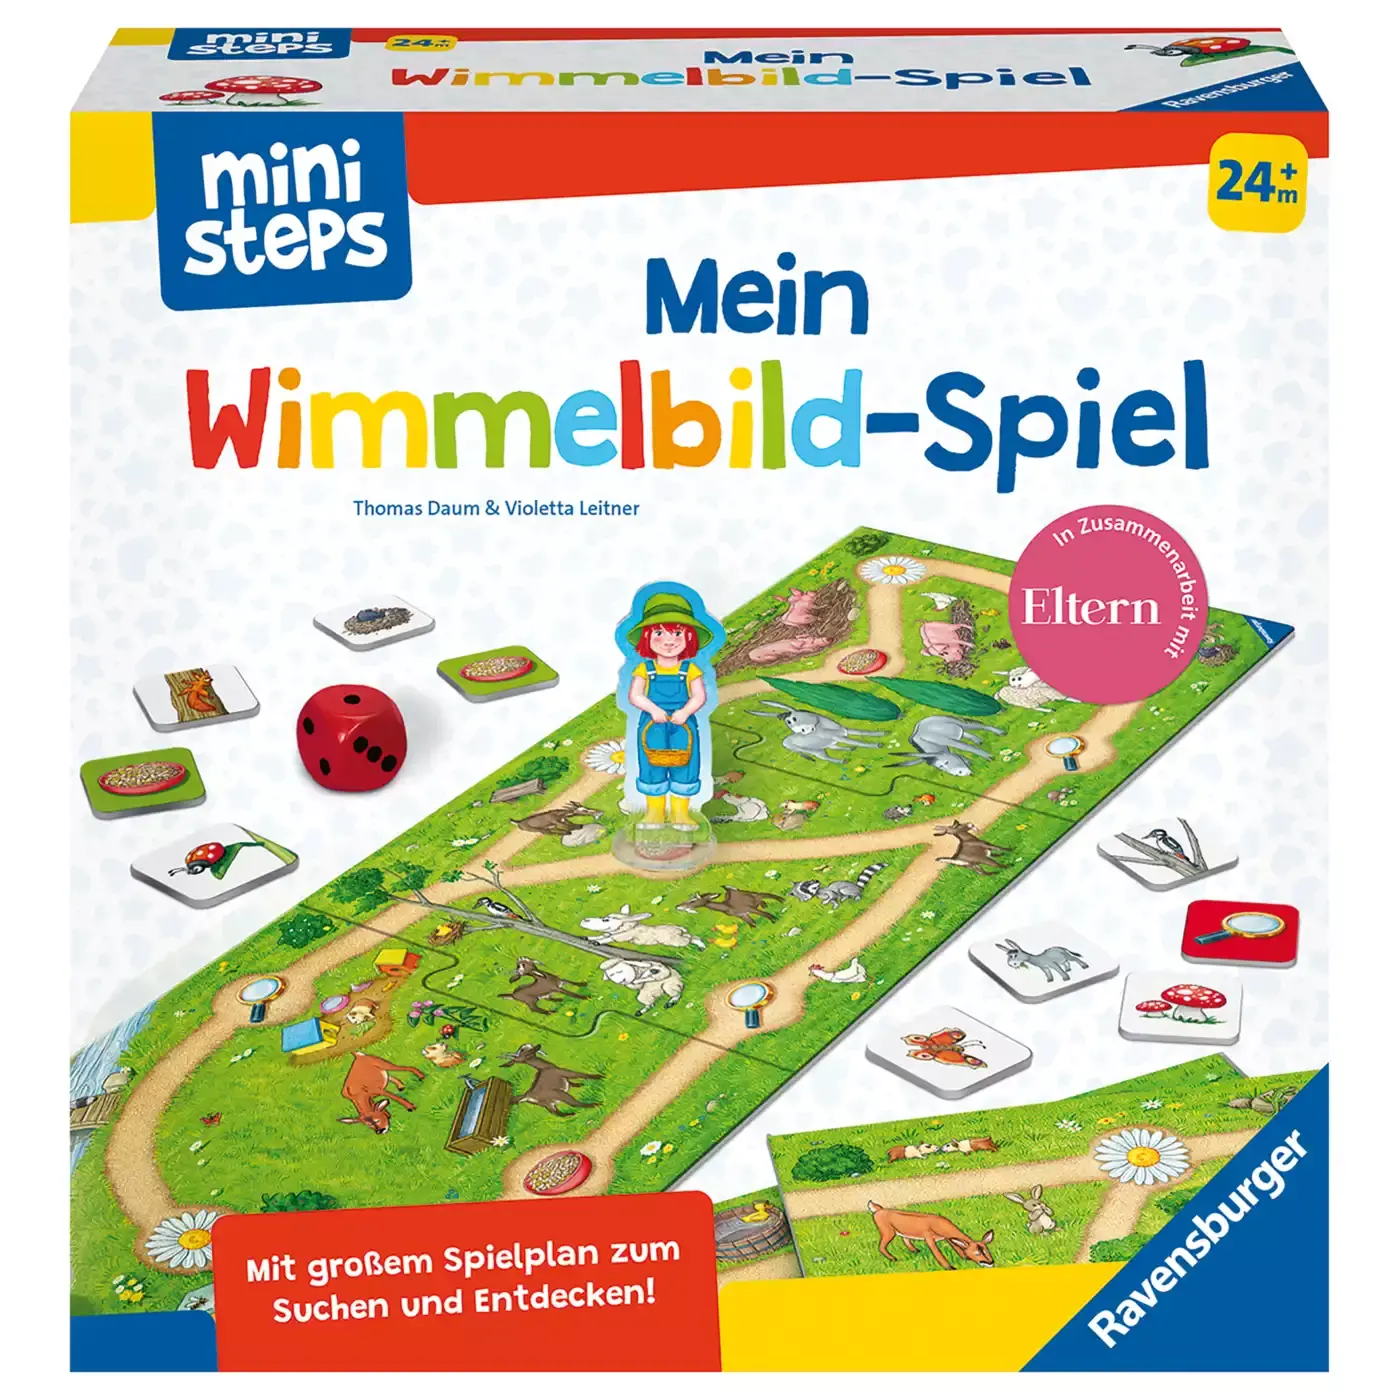 Mini Steps Mein Wimmelbild-Spiel Ravensburger 2000579698903 1